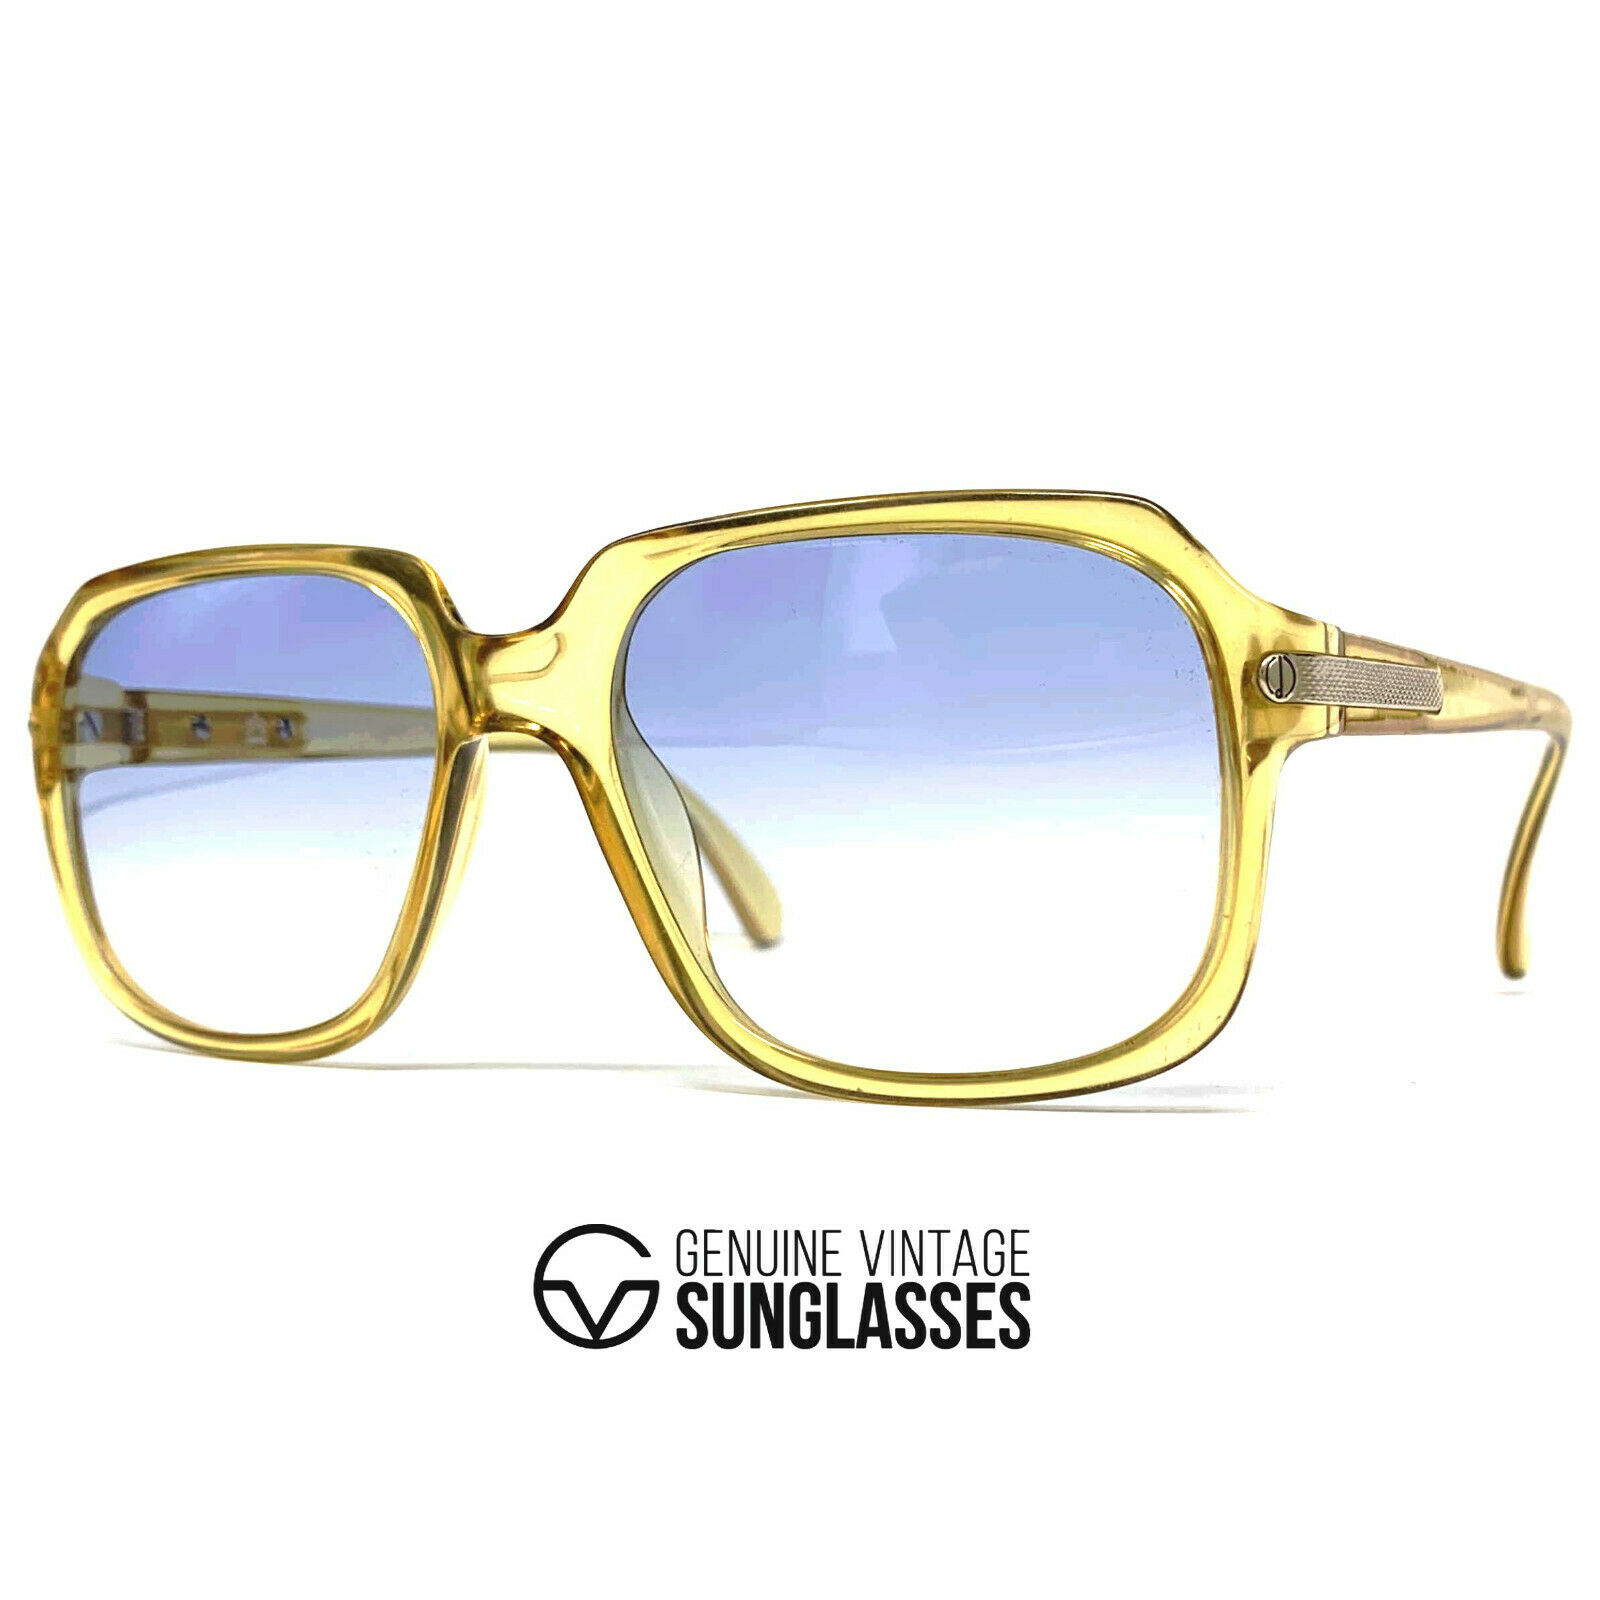 Nos Vintage Dunhill 6001 Sunglasses - Austria 80's - Large - Original